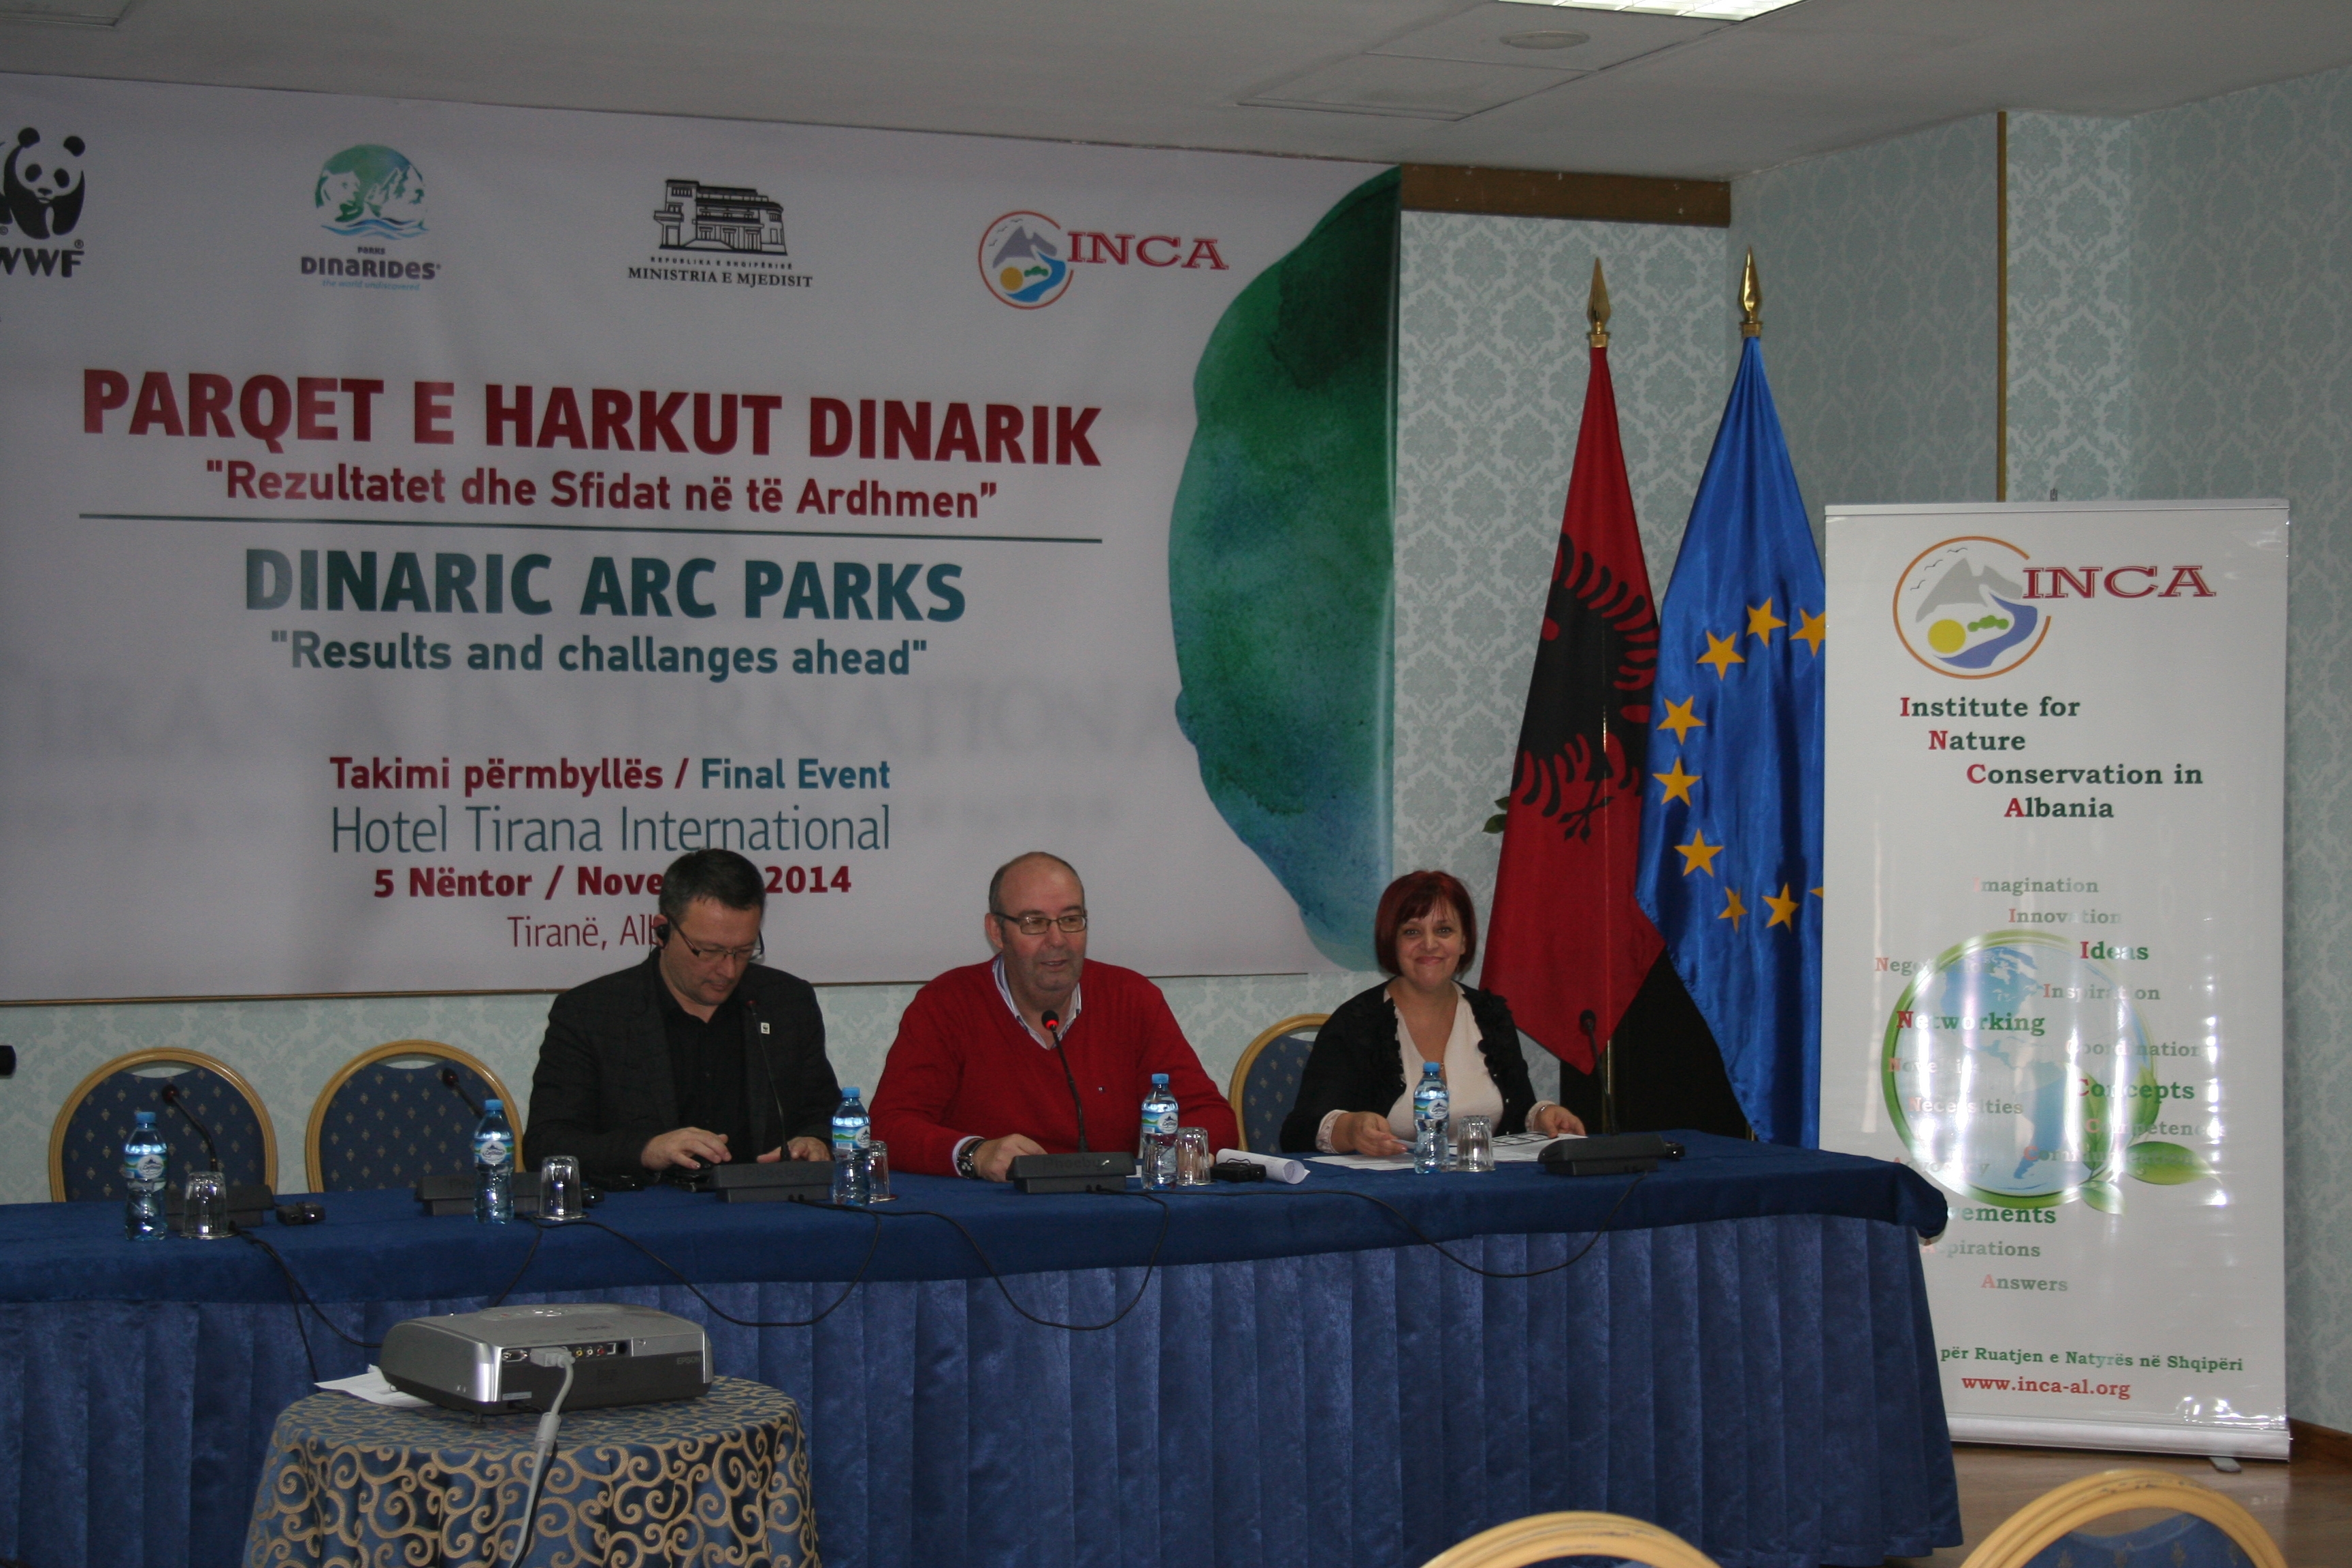 Parqet e Harkut Dinarik në Shqipëri, rezultatet dhe sfidat në të ardhmen